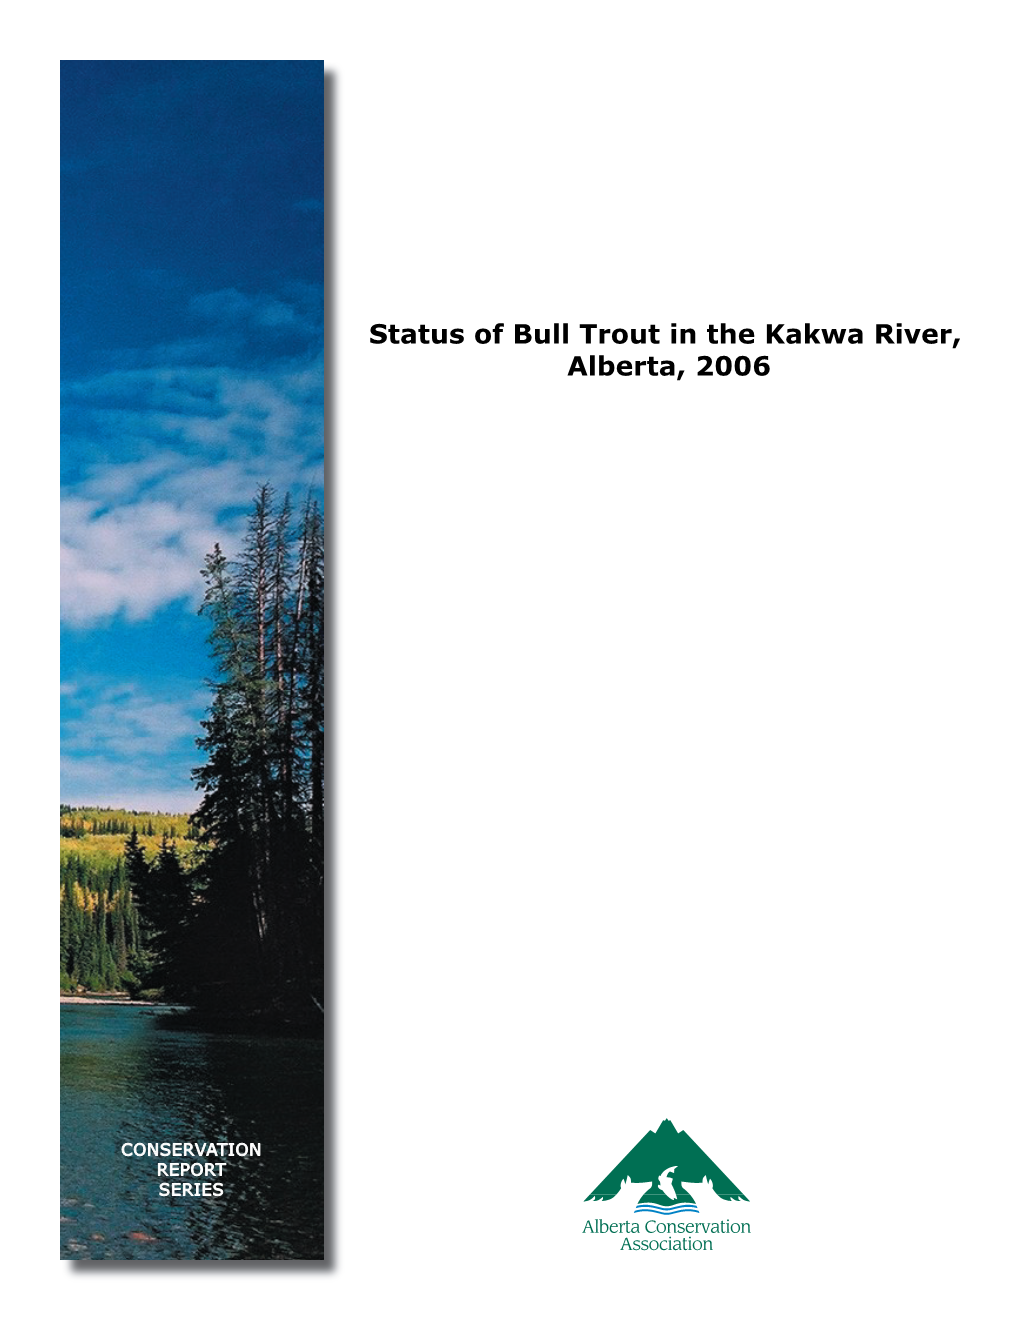 Status of Bull Trout in the Kakwa River, Alberta, 2006